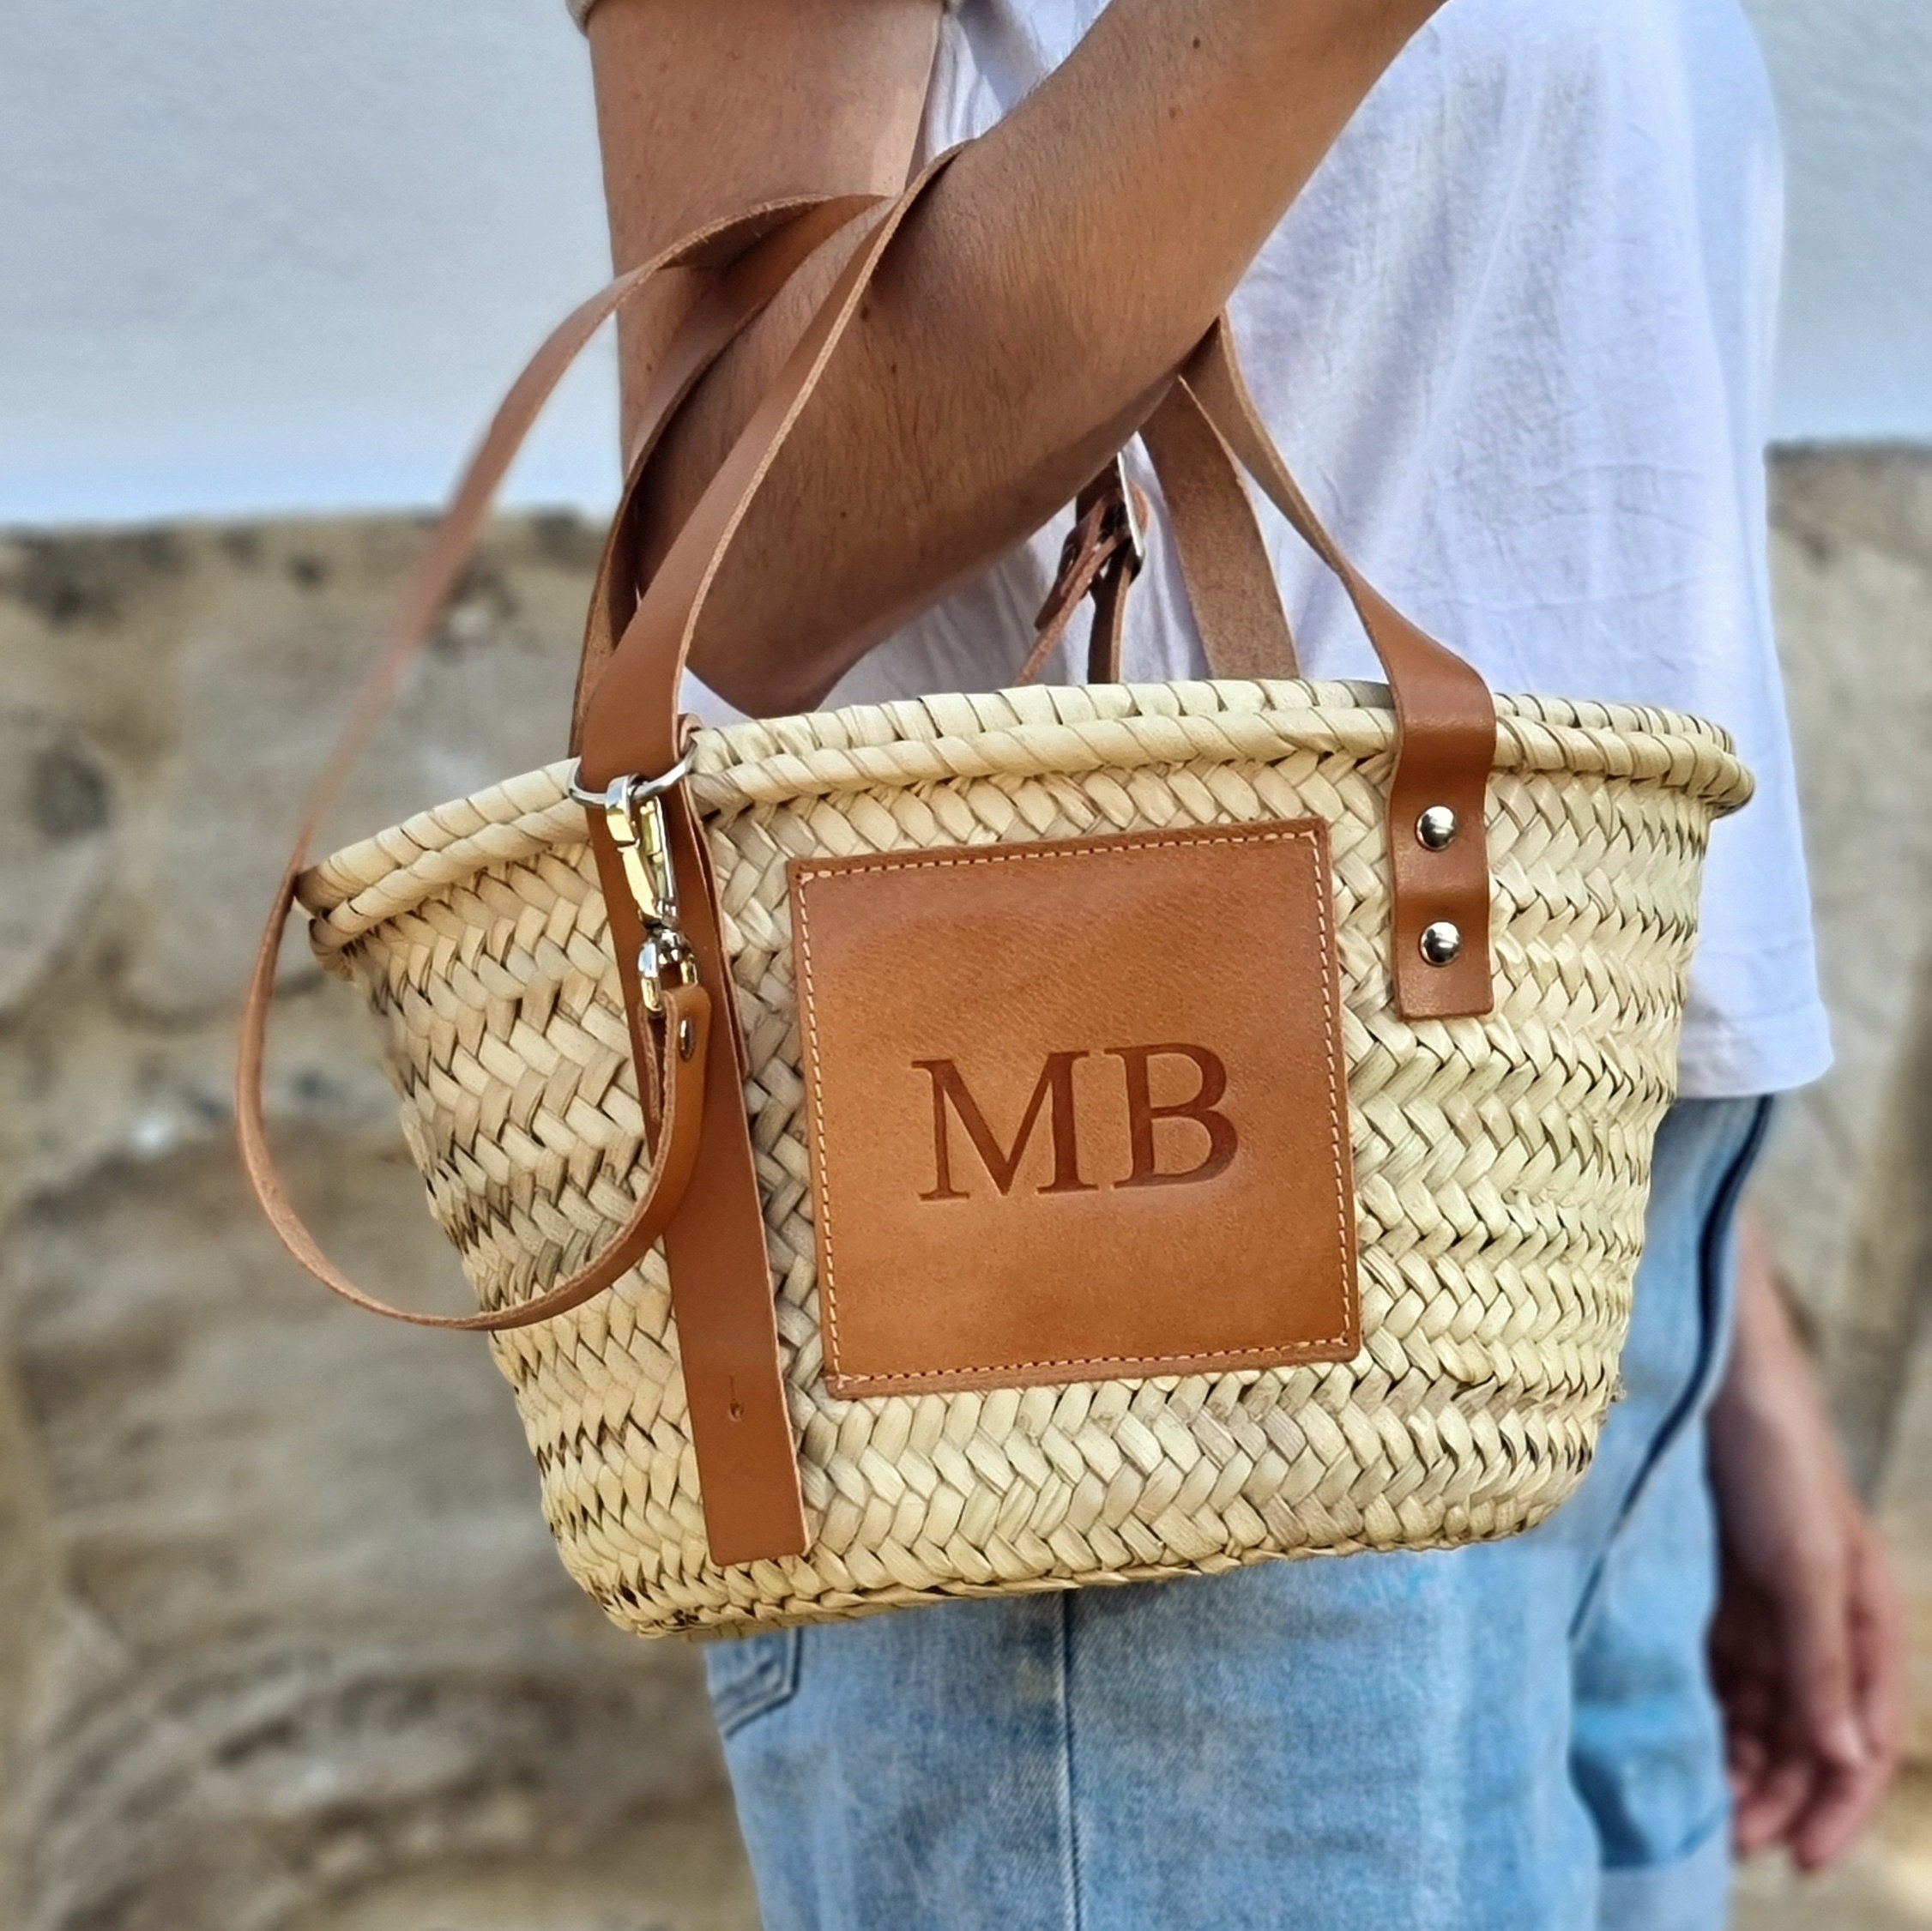 LOEWE Basket shoulder bag mini purse summer brown leather beige limited  novelty